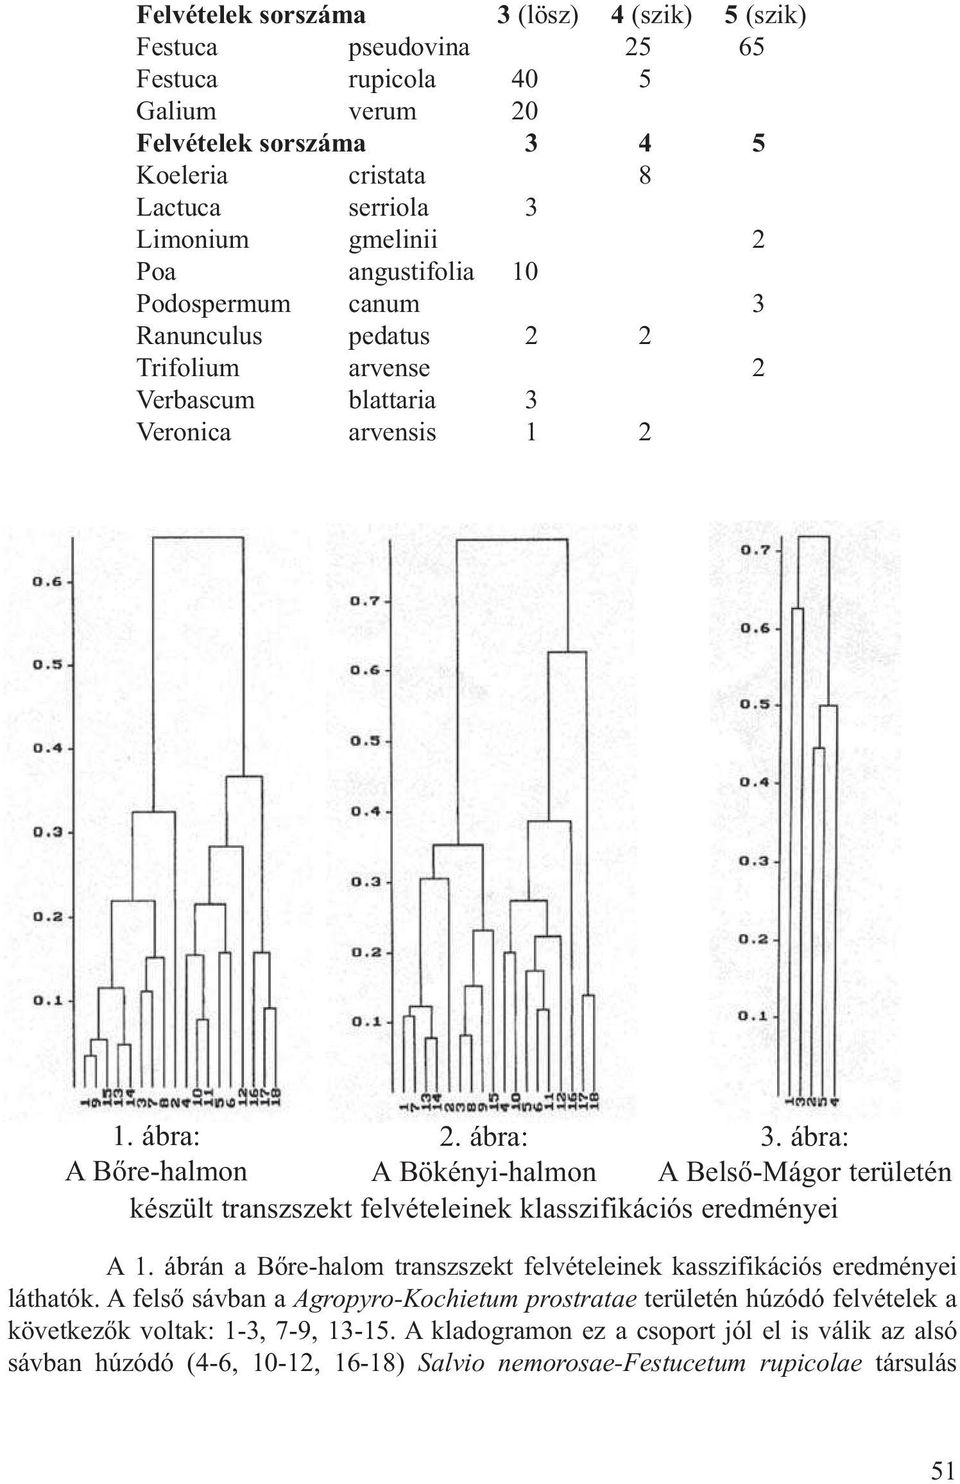 ábra: A Belső-Mágor területén készült transzszekt felvételeinek klasszifikációs eredményei A 1. ábrán a Bőre-halom transzszekt felvételeinek kasszifikációs eredményei láthatók.